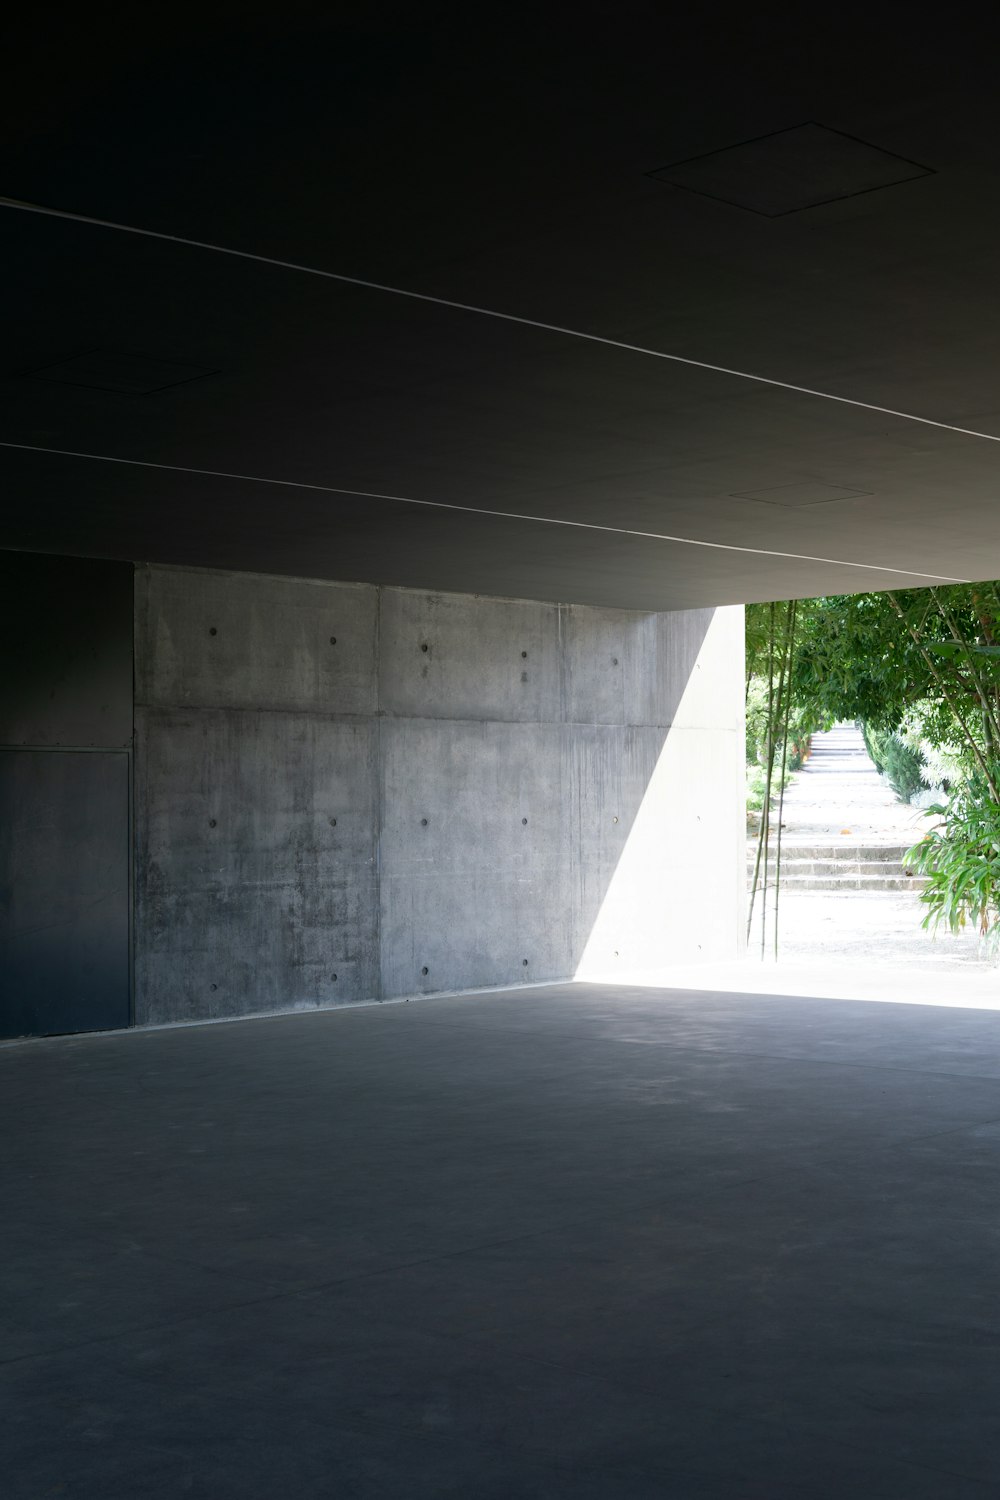 no space in grey concrete building